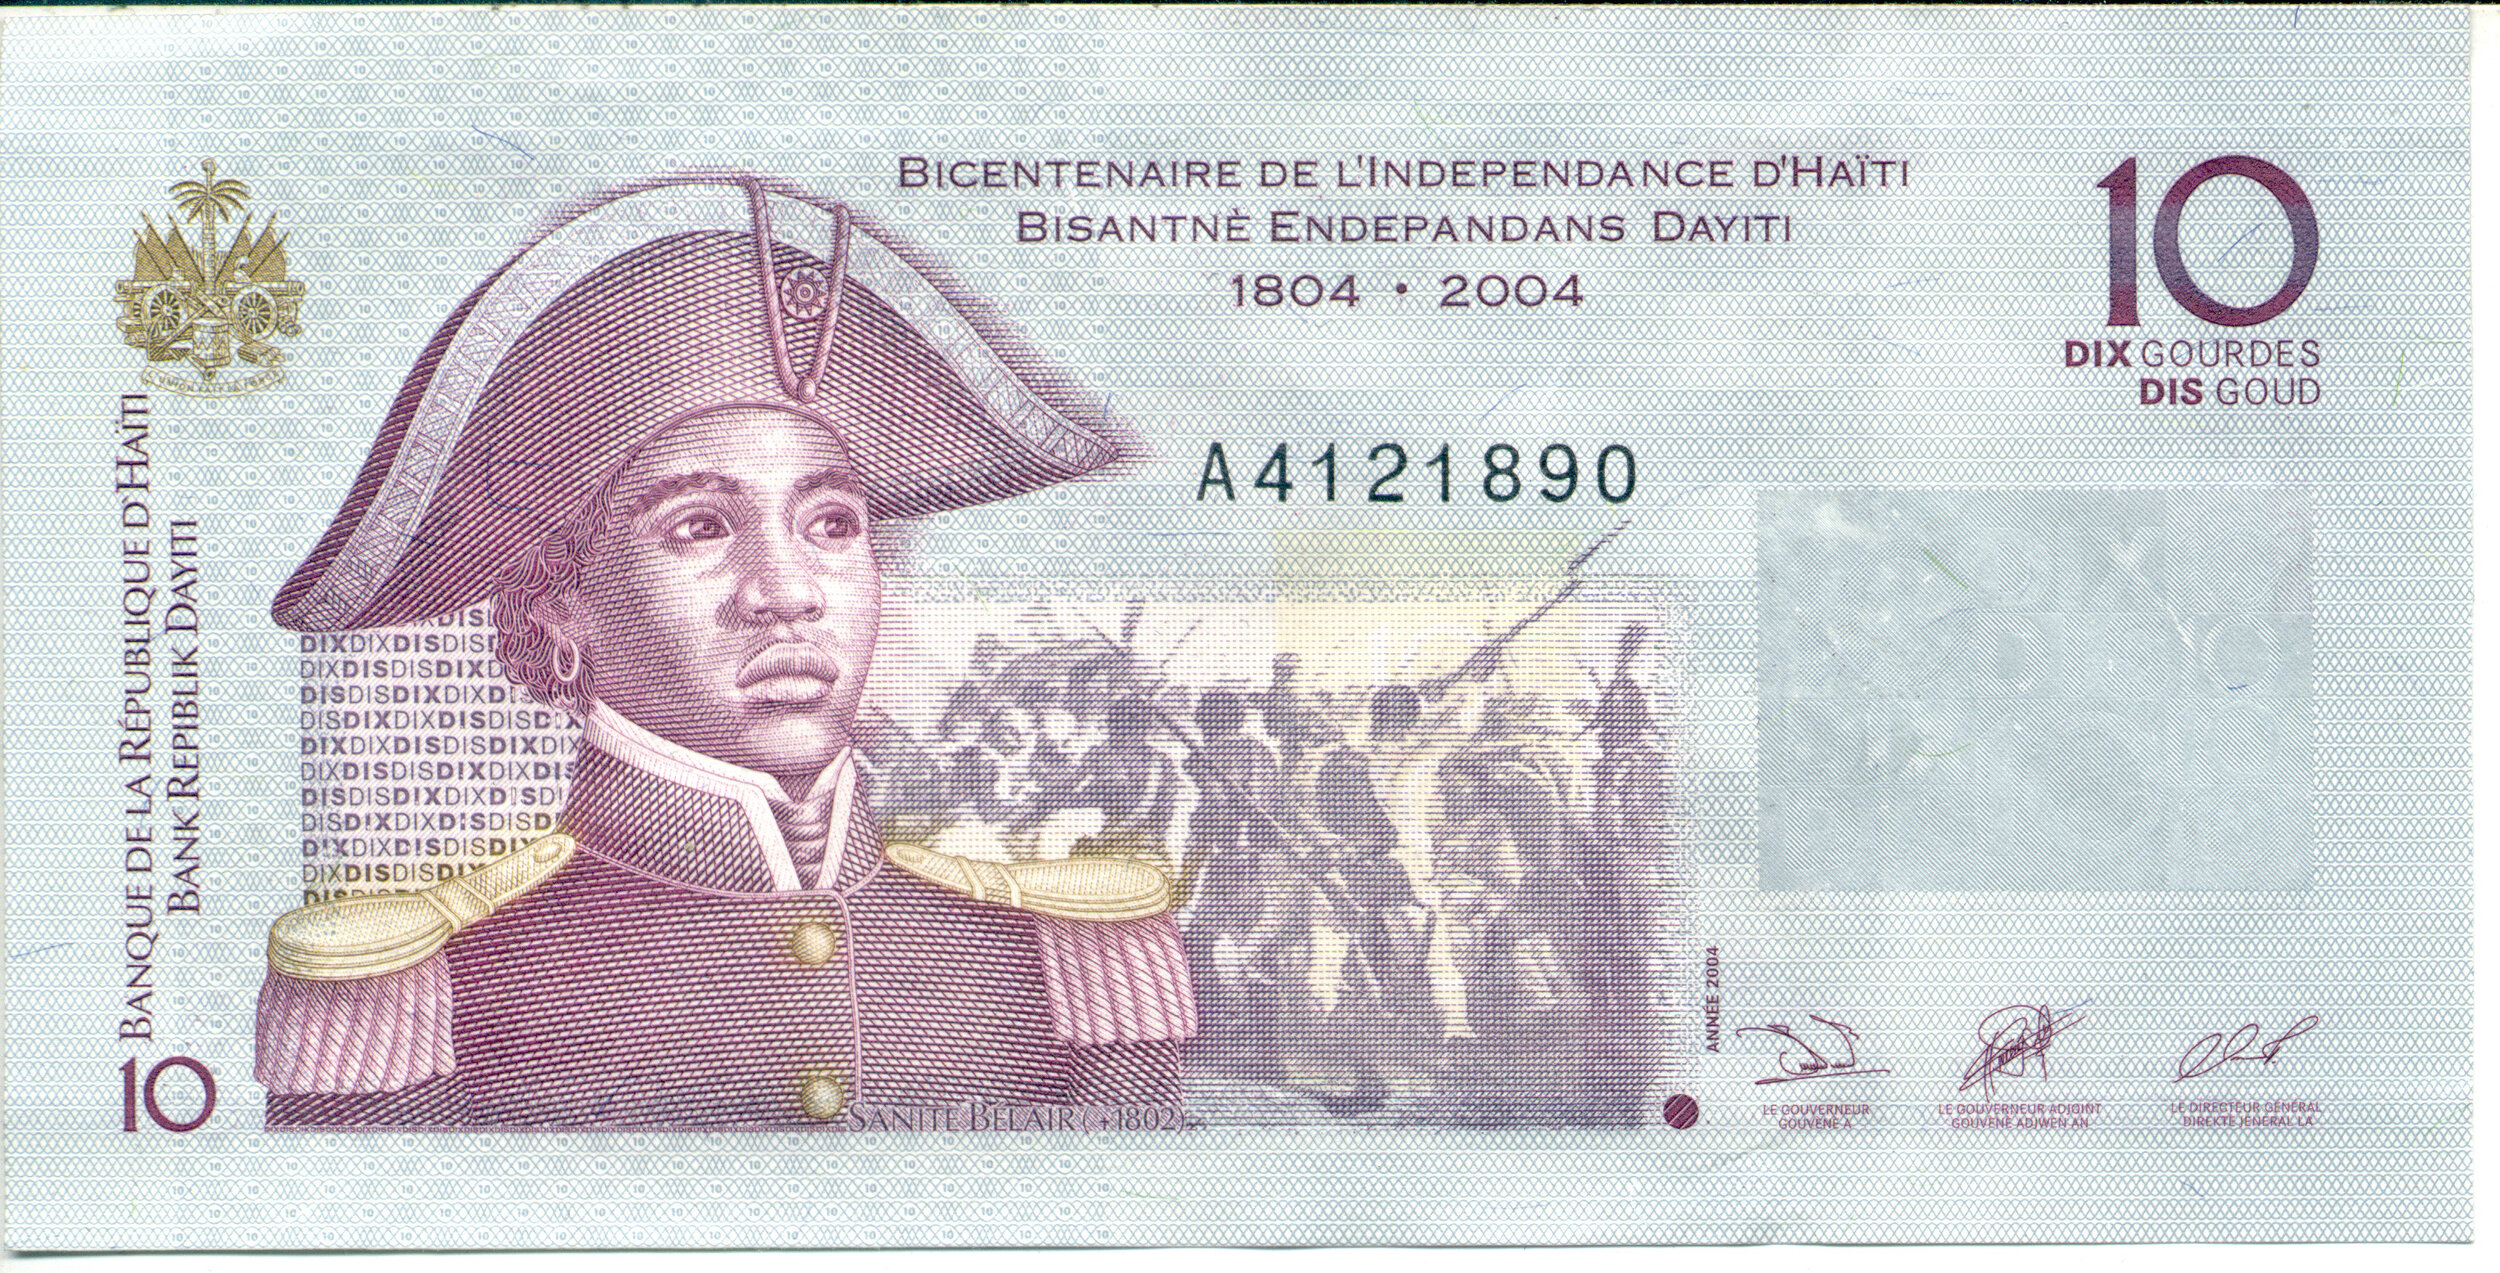 10 Gourdes Banknote, Bicentenaire de l'Indépendance d'Haïti/Bisantè Endepandans Dayiti, Collection Richard Barbot